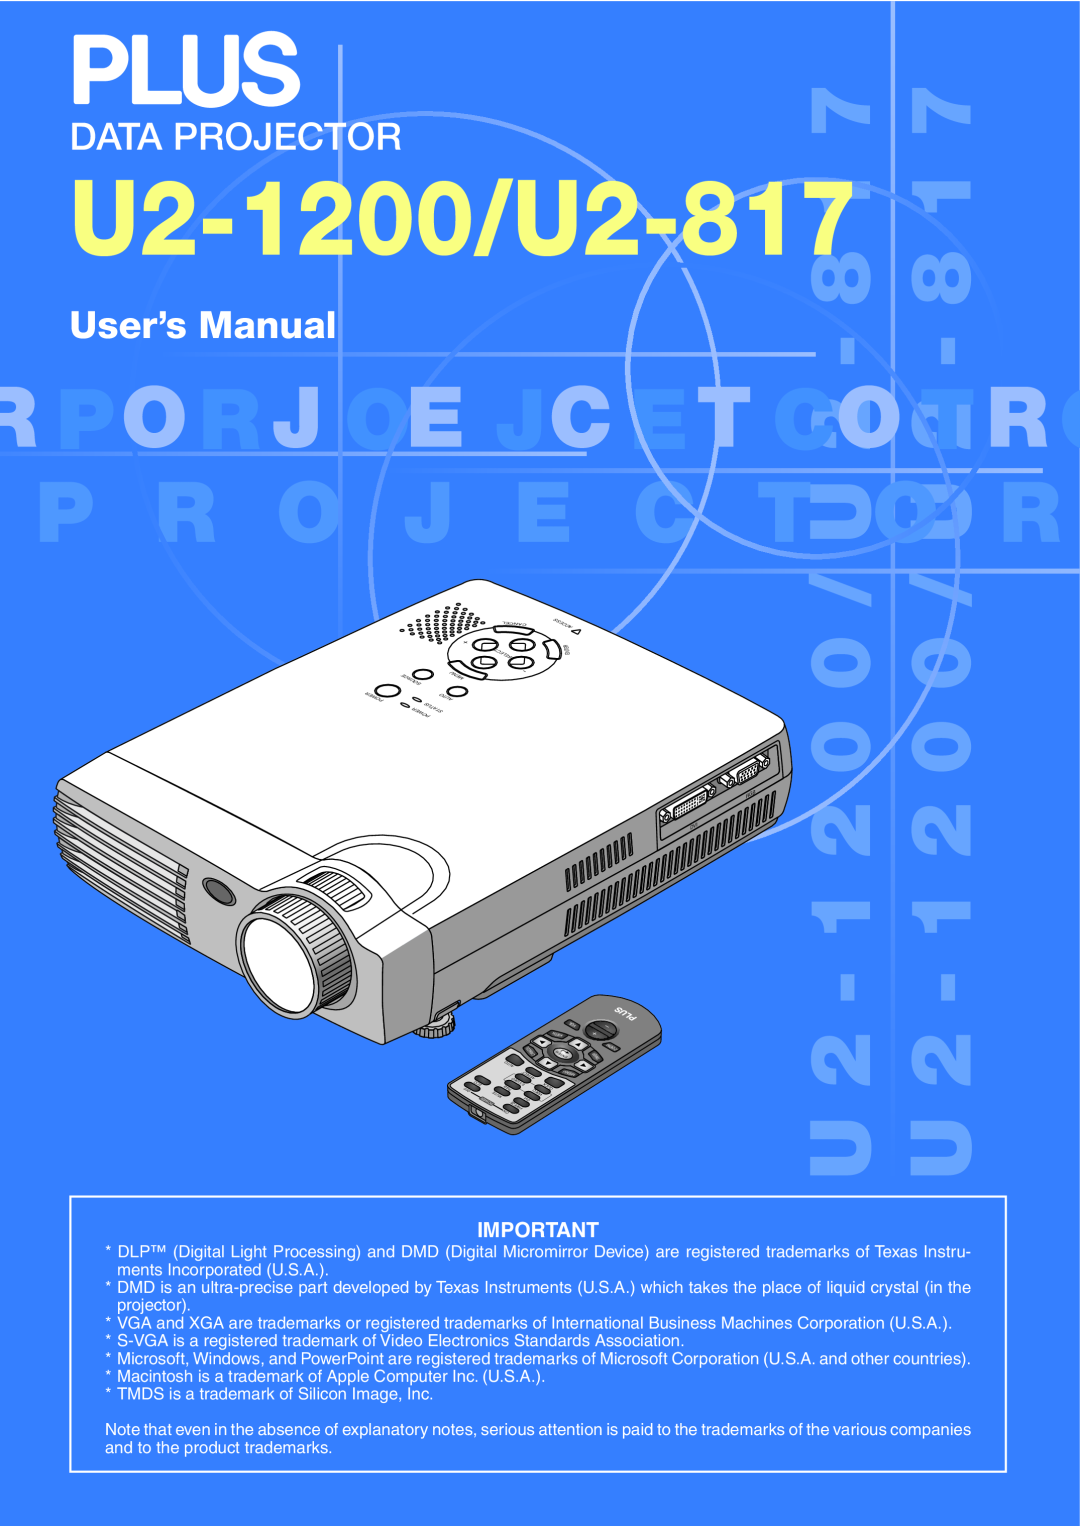 PLUS Vision Data Projector user manual U2-1200/U2-817, User’s Manual 